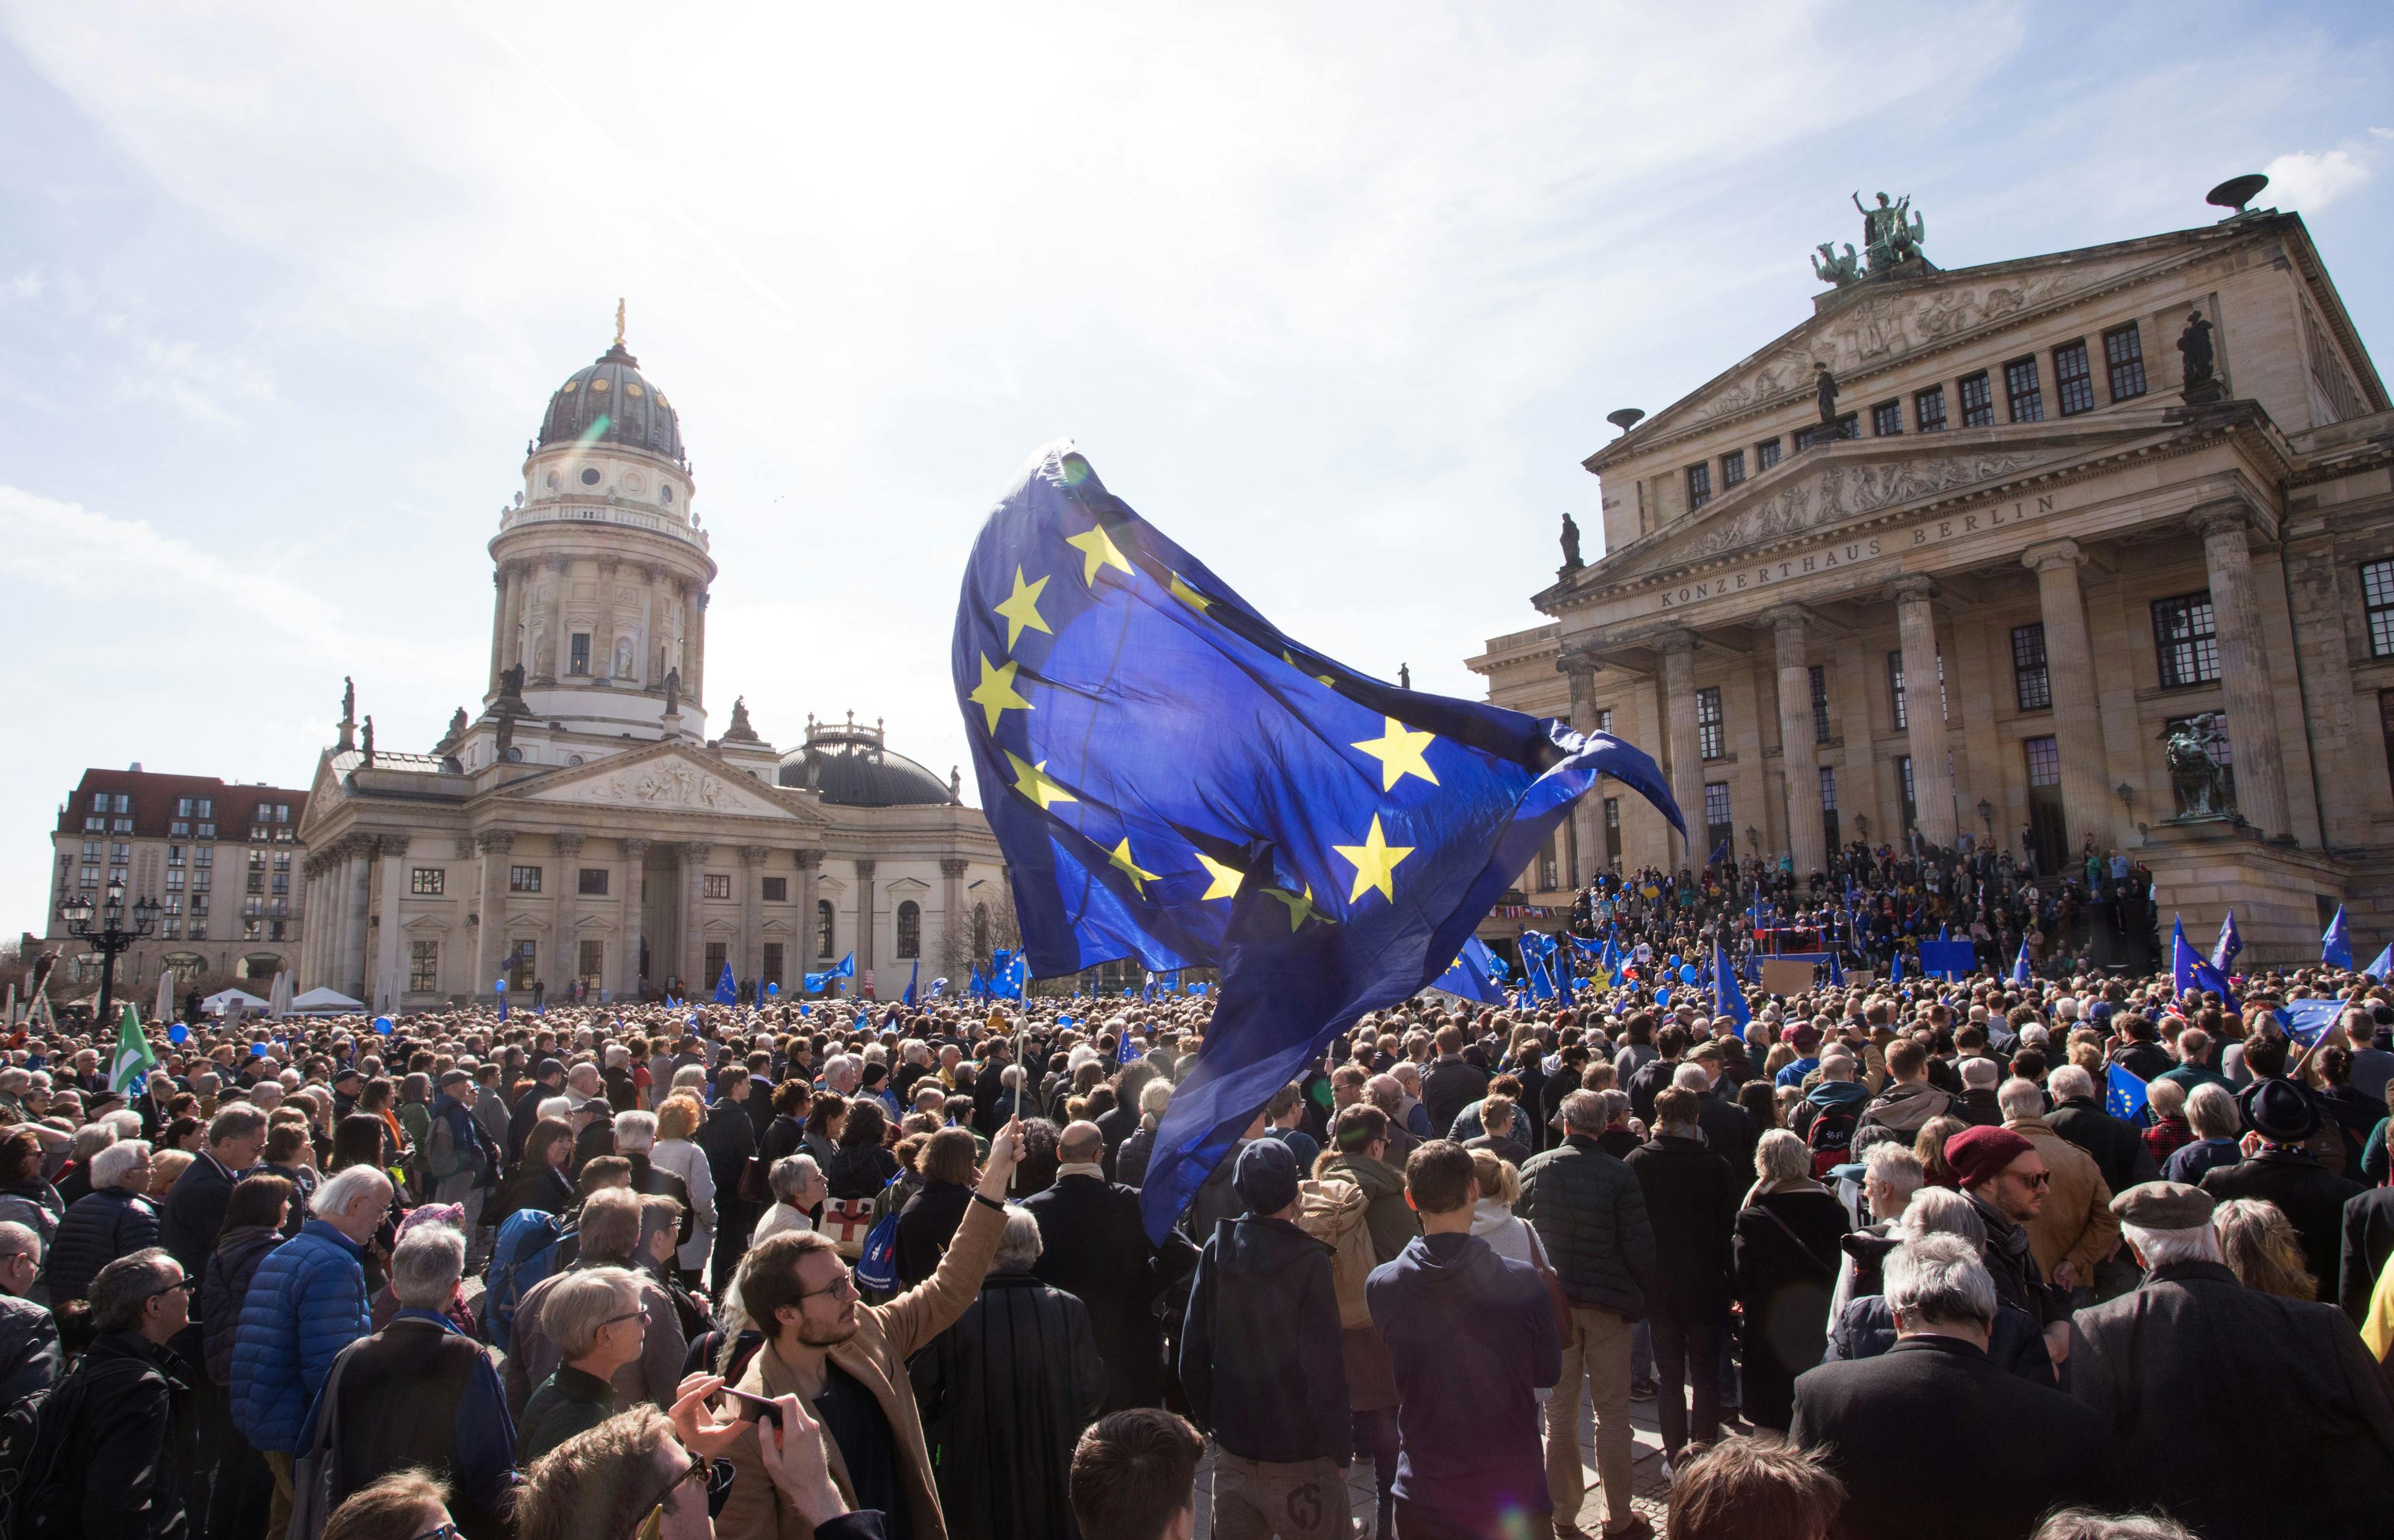 Bei einer Pulse of Europe Demo auf dem Gendarmenmarkt in Berlin stehen vor der schöner Kulisse der Dome viele Menschen und feiern Europa. Zentral im Fokus sieht man eine große Europaflagge, die jemand schwingt.